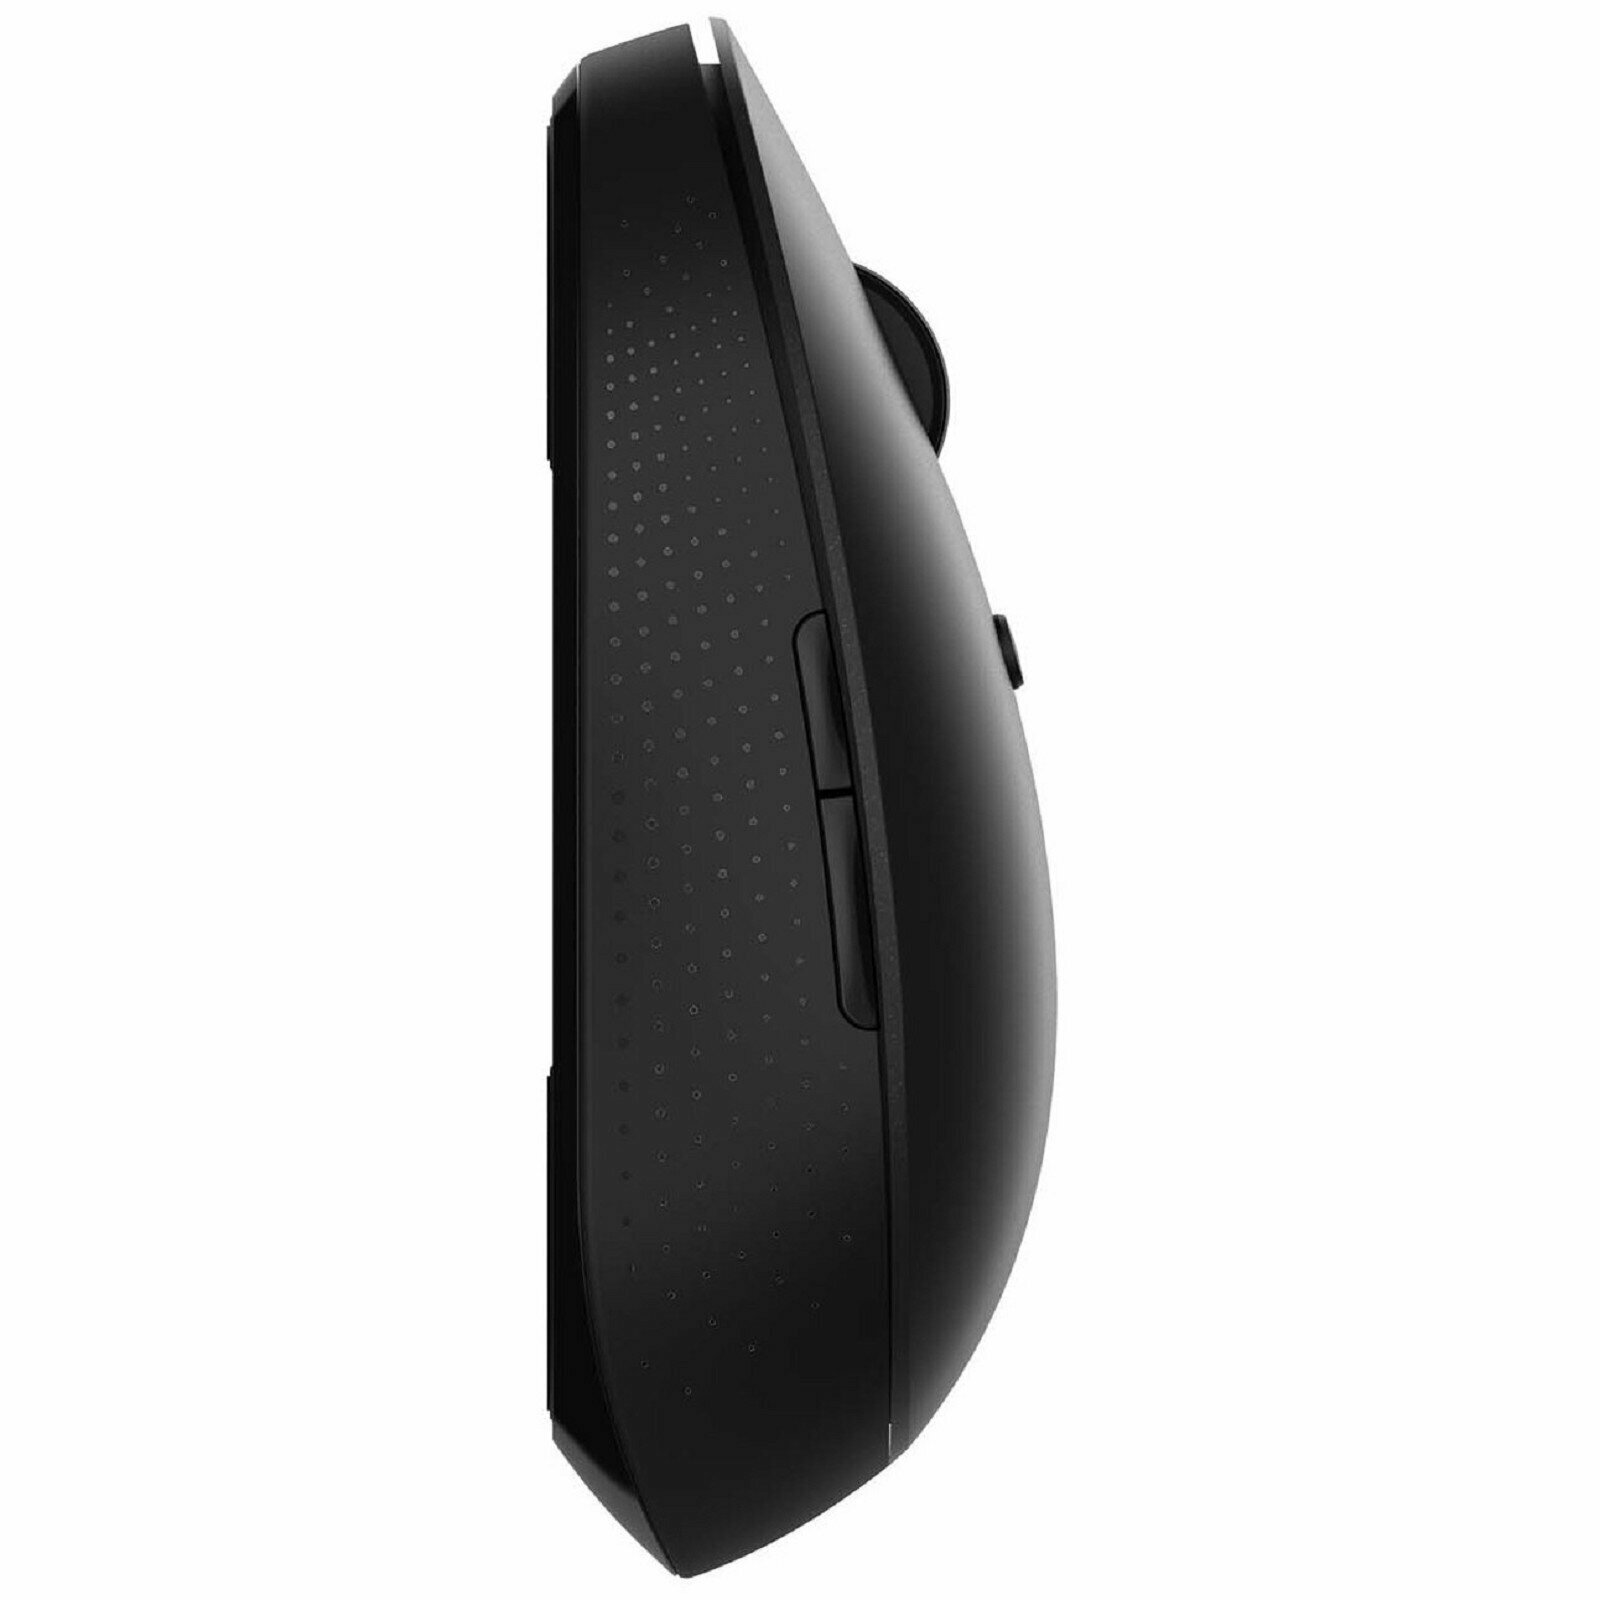 Беспроводная мышь Xiaomi Mi Dual Mode Wireless Mouse Silent Edition черный